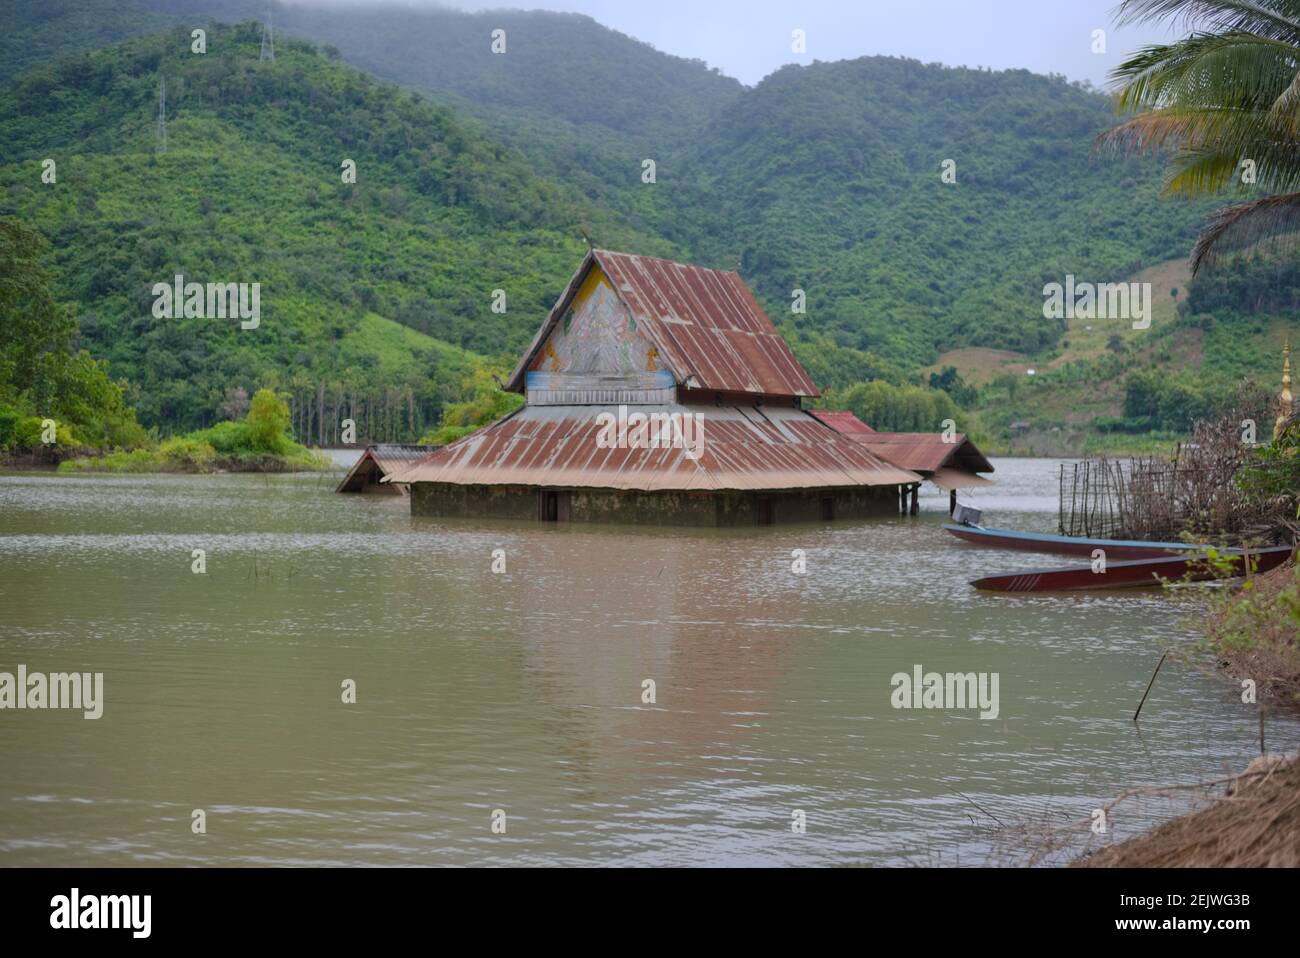 Lat Tha Hae Tempel, halb in Wasser getaucht, verursacht durch den Bau eines neuen Staudamms am Nam Ou Fluss in Nord-Laos. Stockfoto